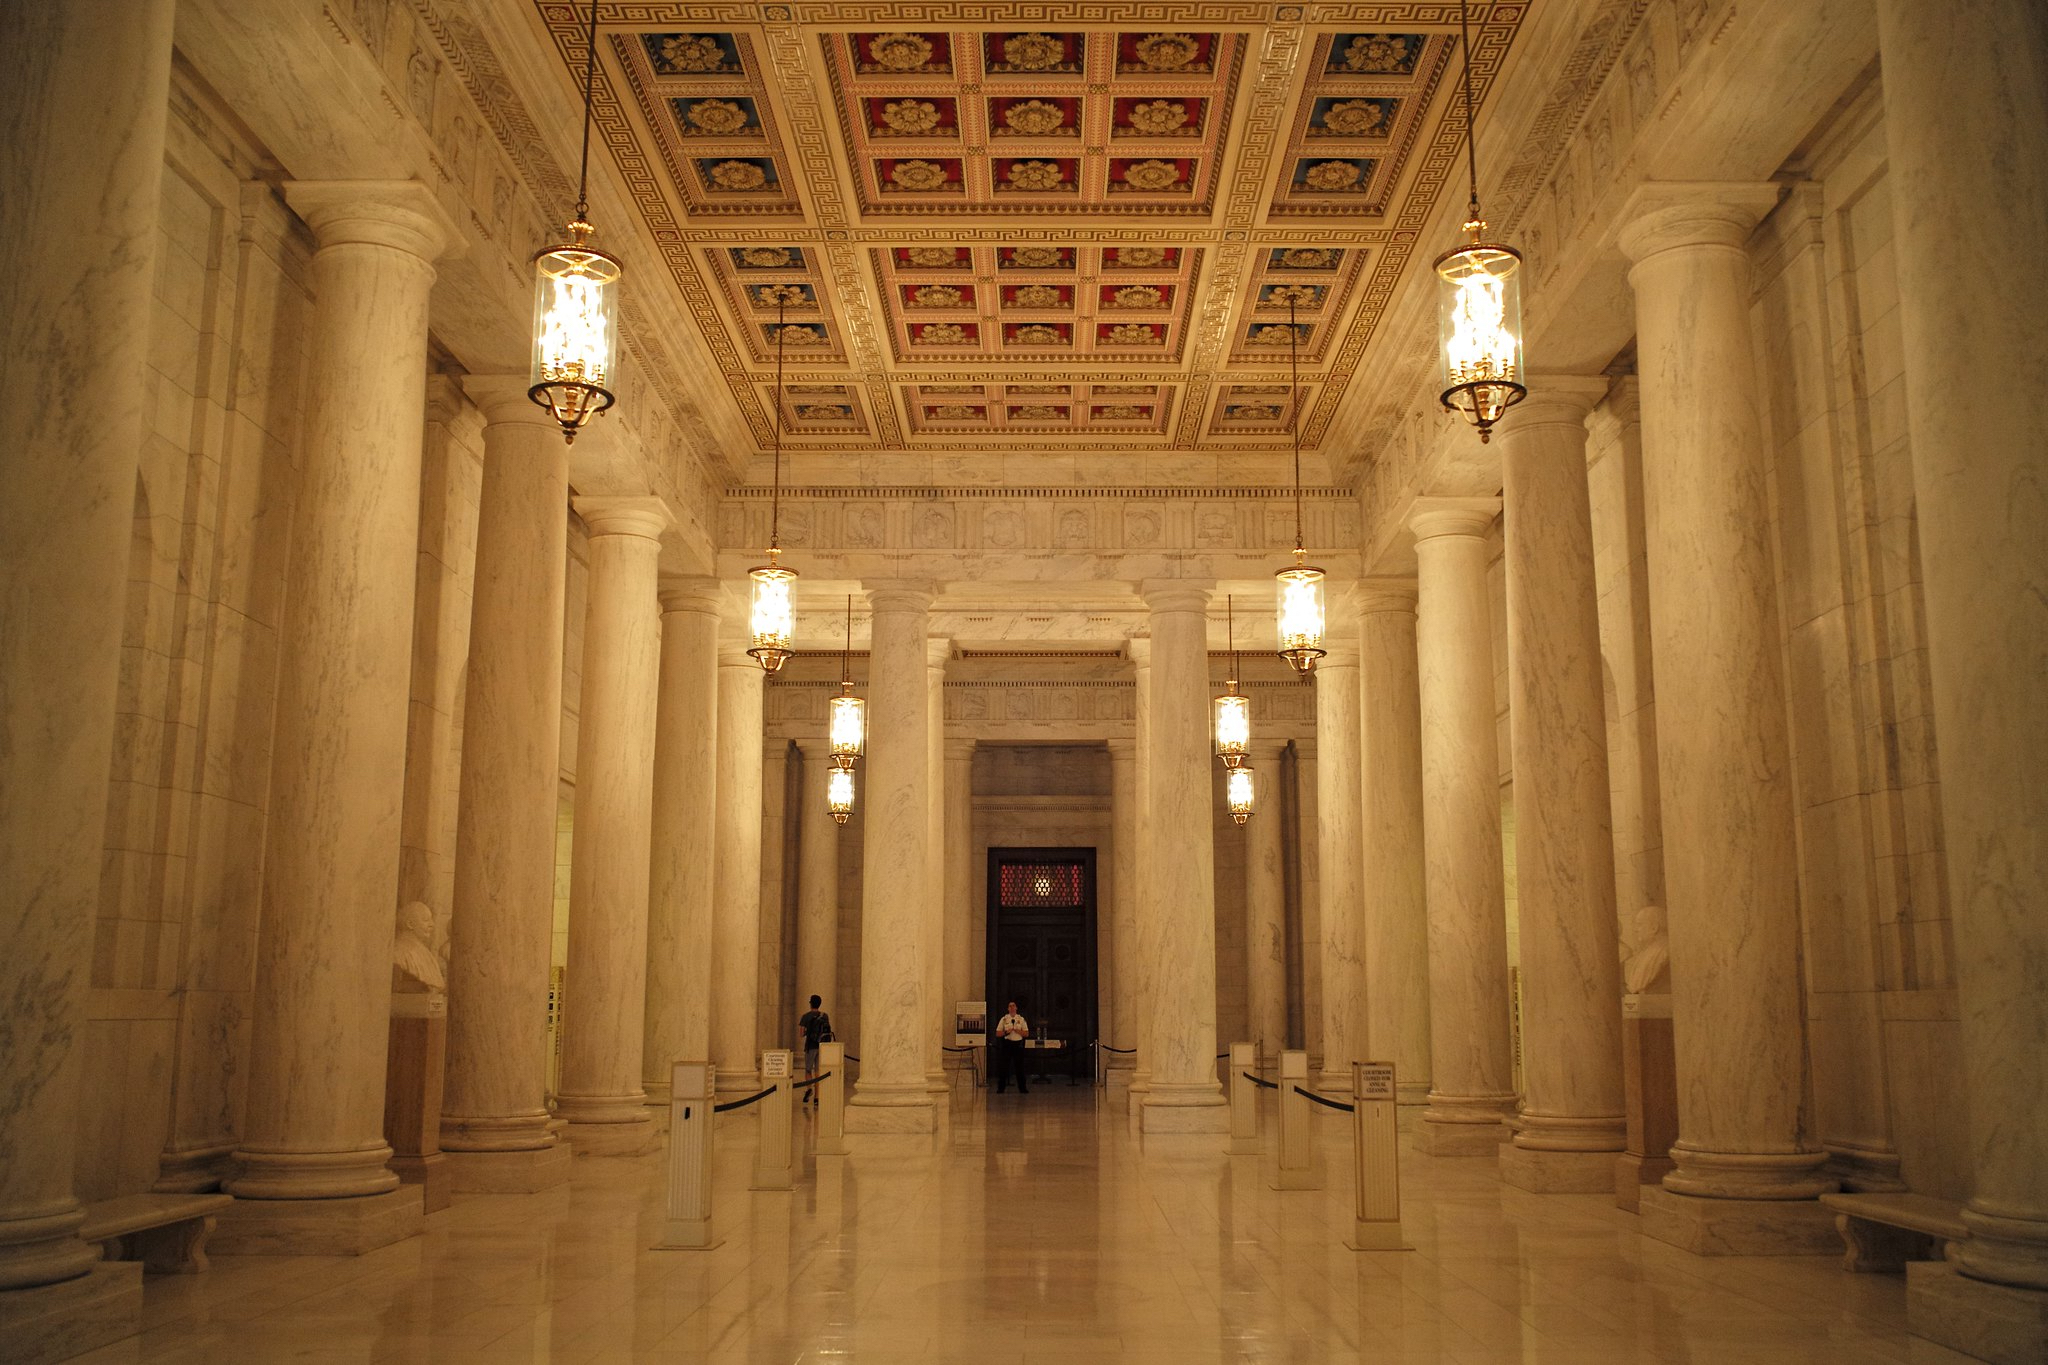 Un largo vestíbulo de mármol con lámparas colgantes y columnas de mármol.  Un guardia esperando junto a una puerta al final del pasillo.